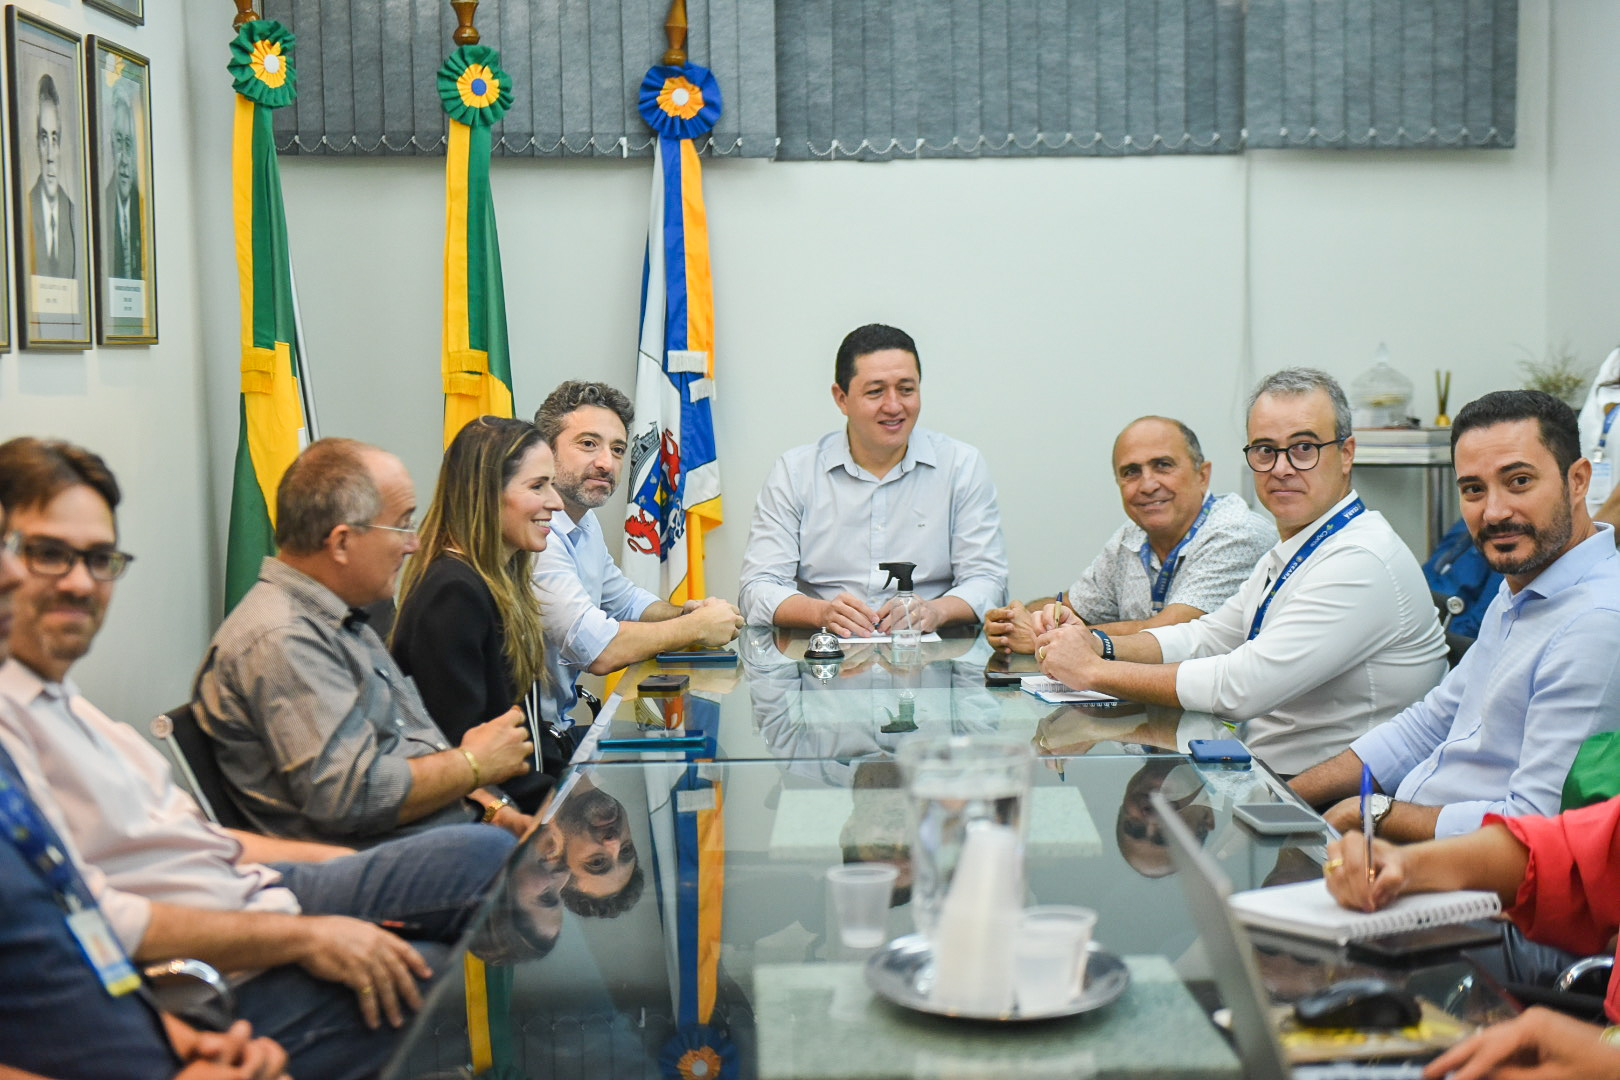 O aproveitamento de área do Castanhão se dará em regime de concessão para a instalação e operação de sistemas de geração de energia elétrica fotovoltaica